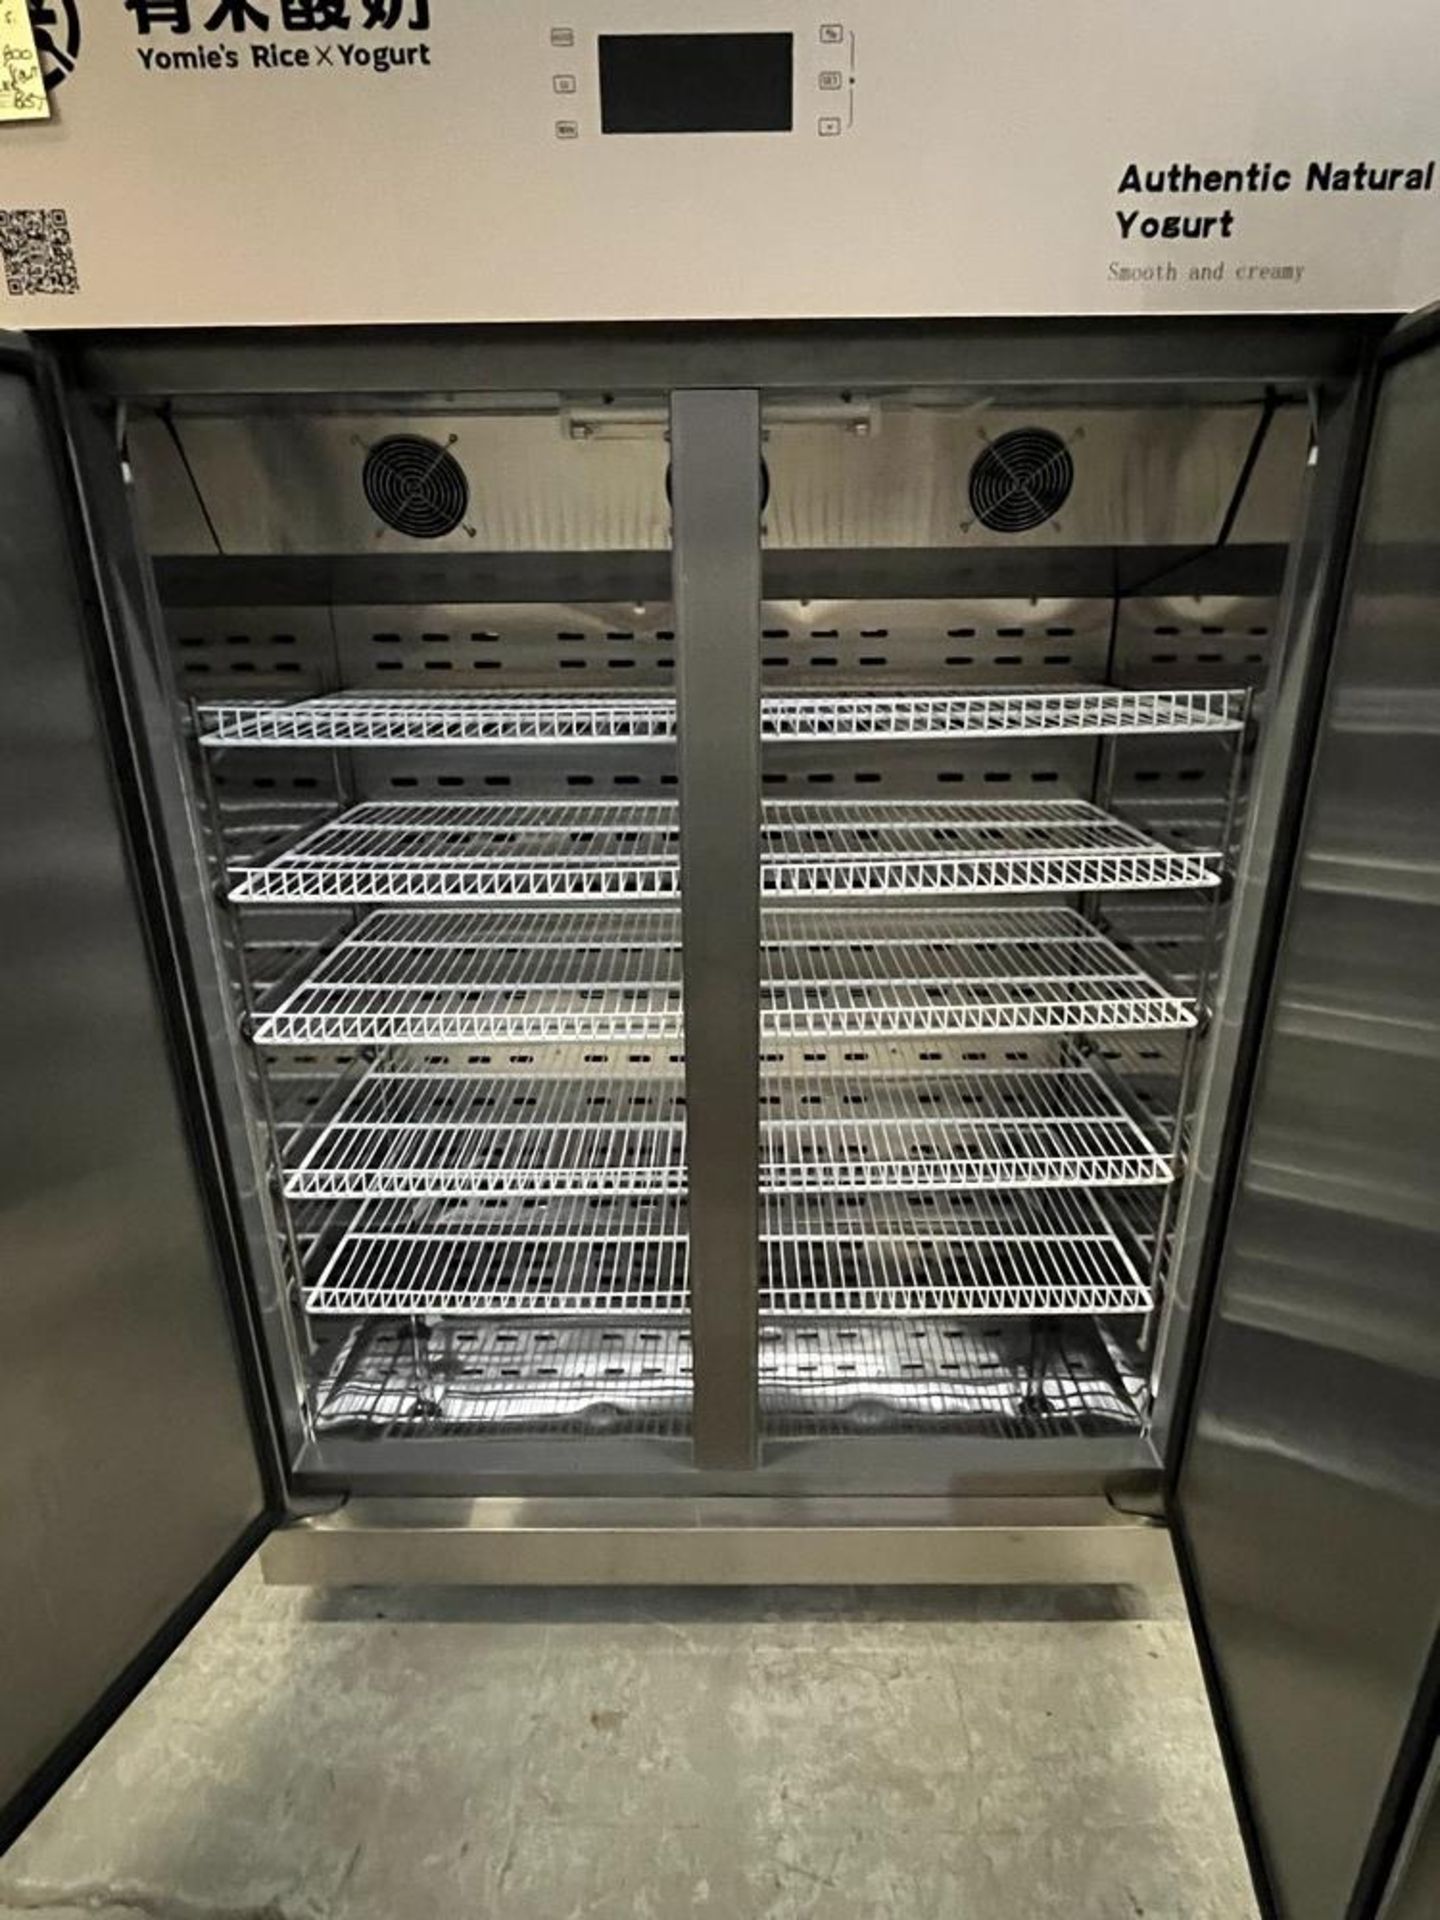 Réfrigérateur 2 portes sur roues acier inox # COW 800 - Yomie's & Yogurt - Image 3 of 4